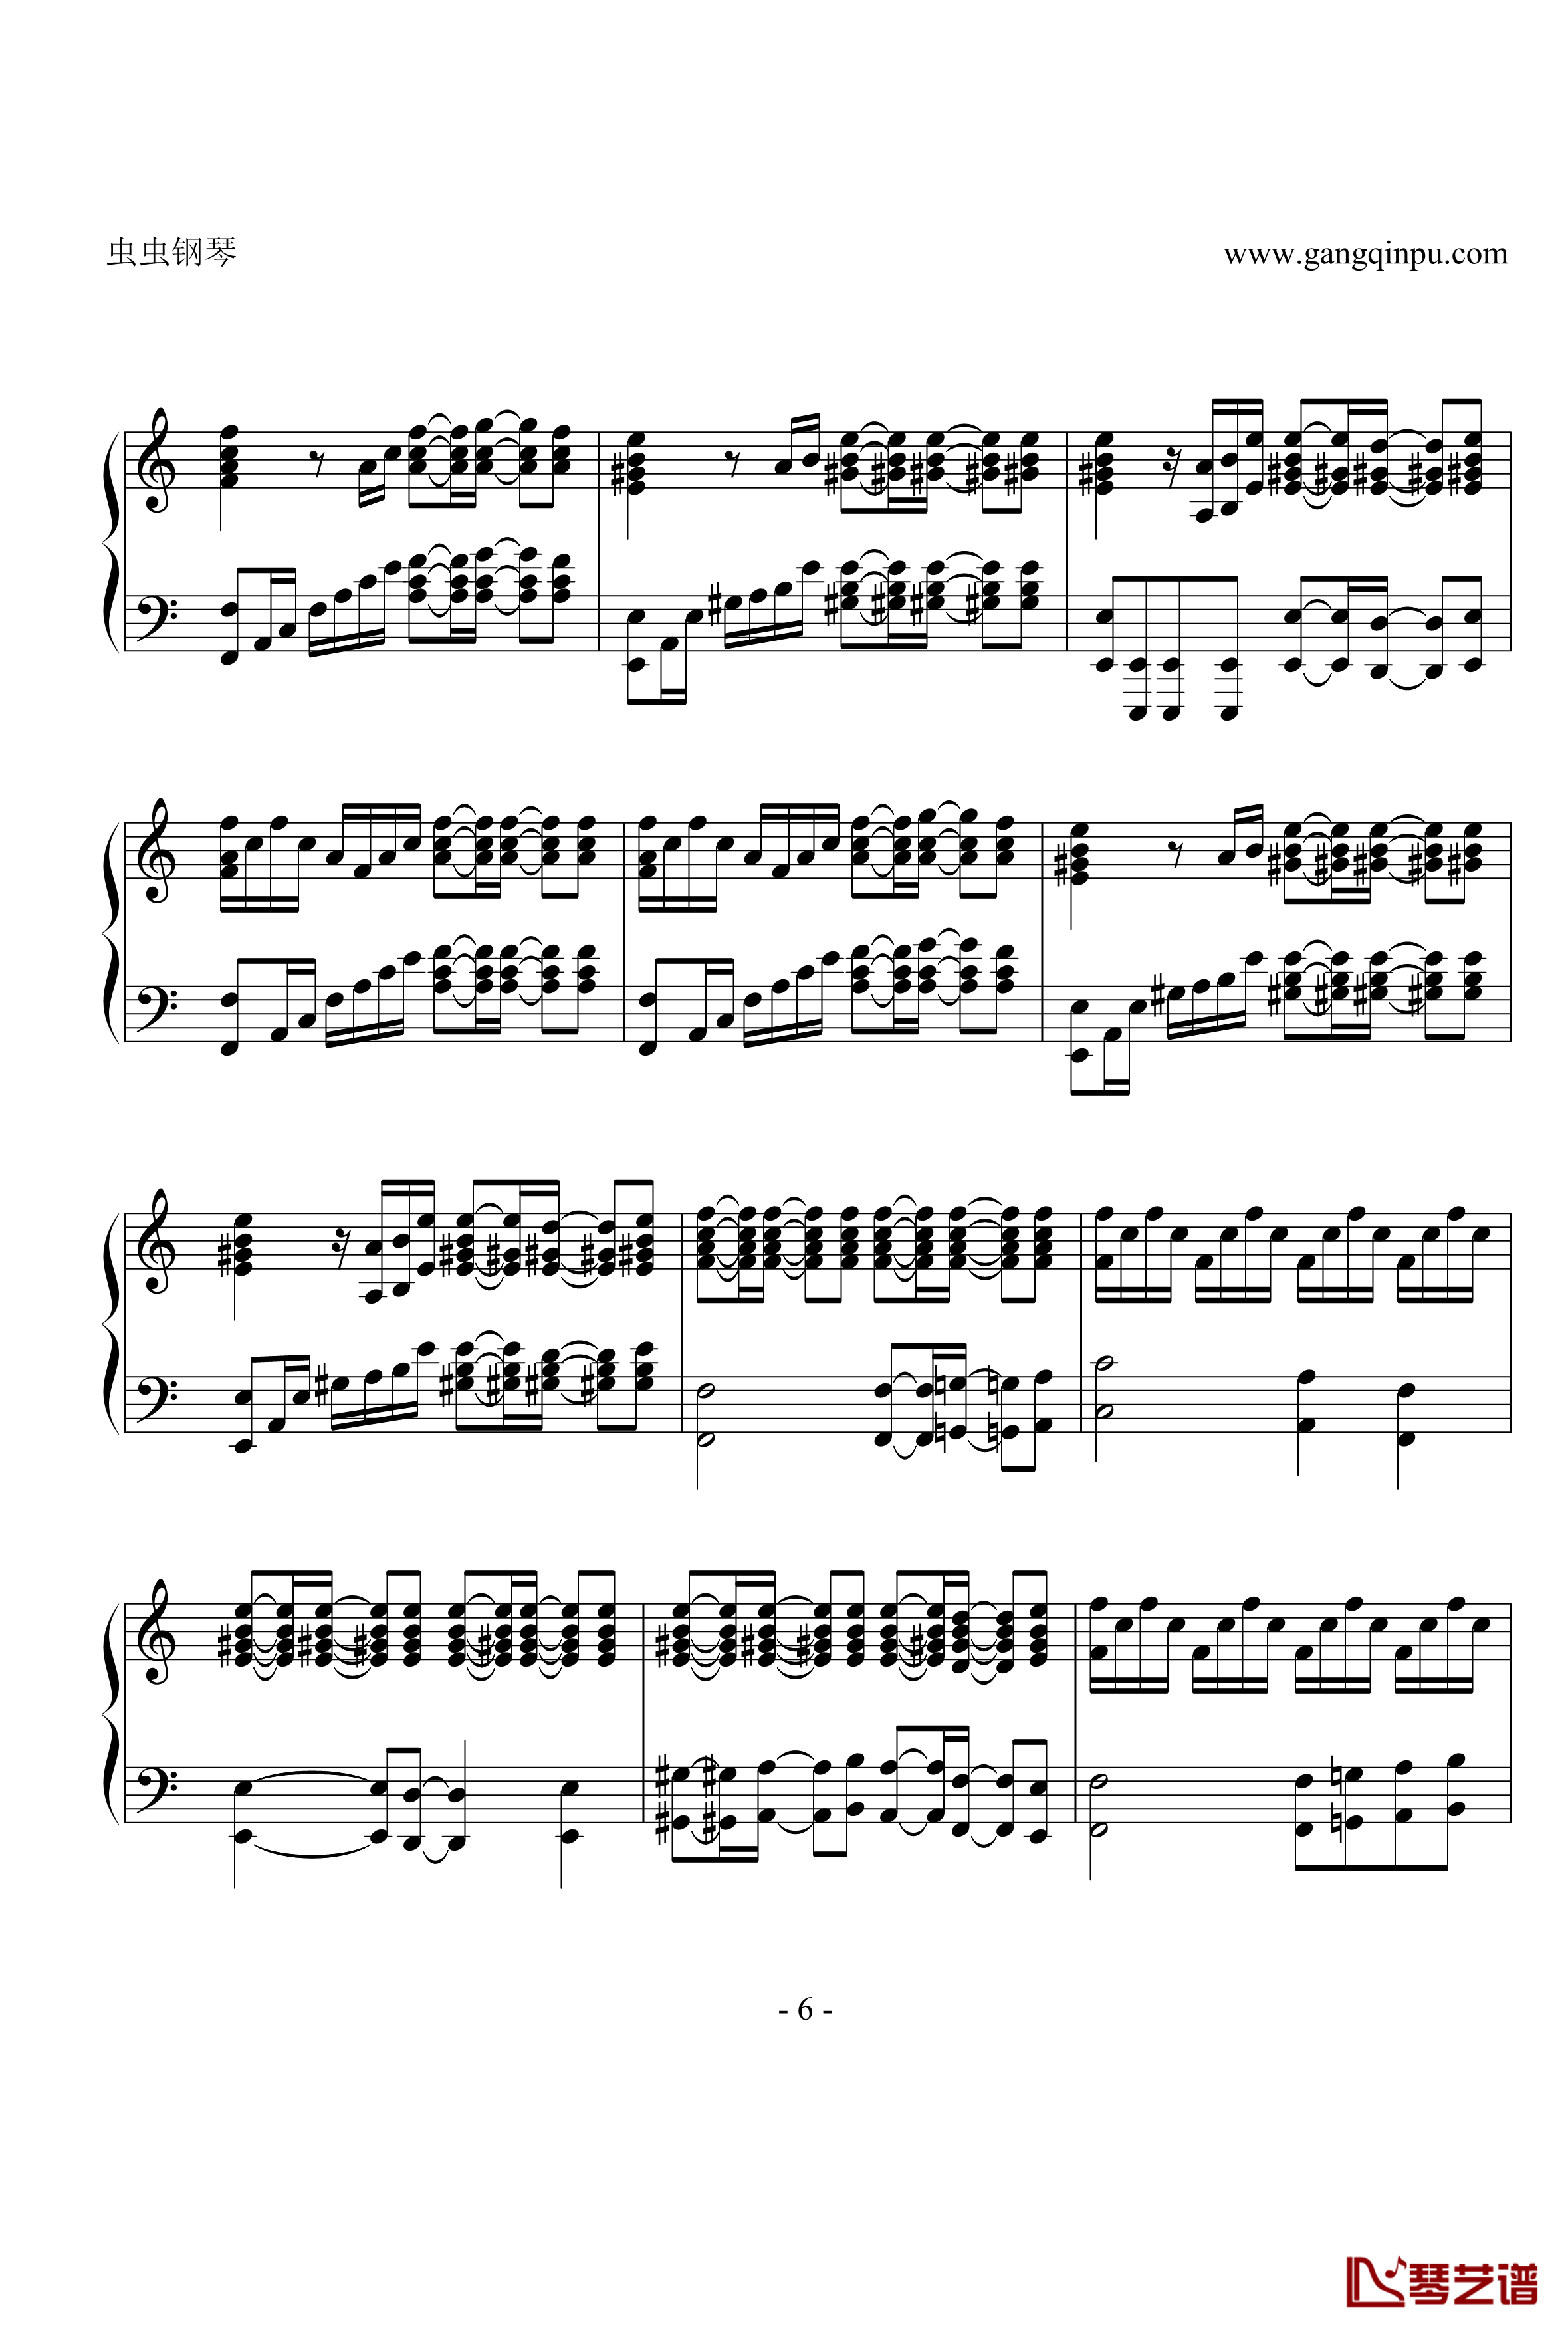 亡灵钢琴钢琴谱-修改版之再版-电锯惊魂6